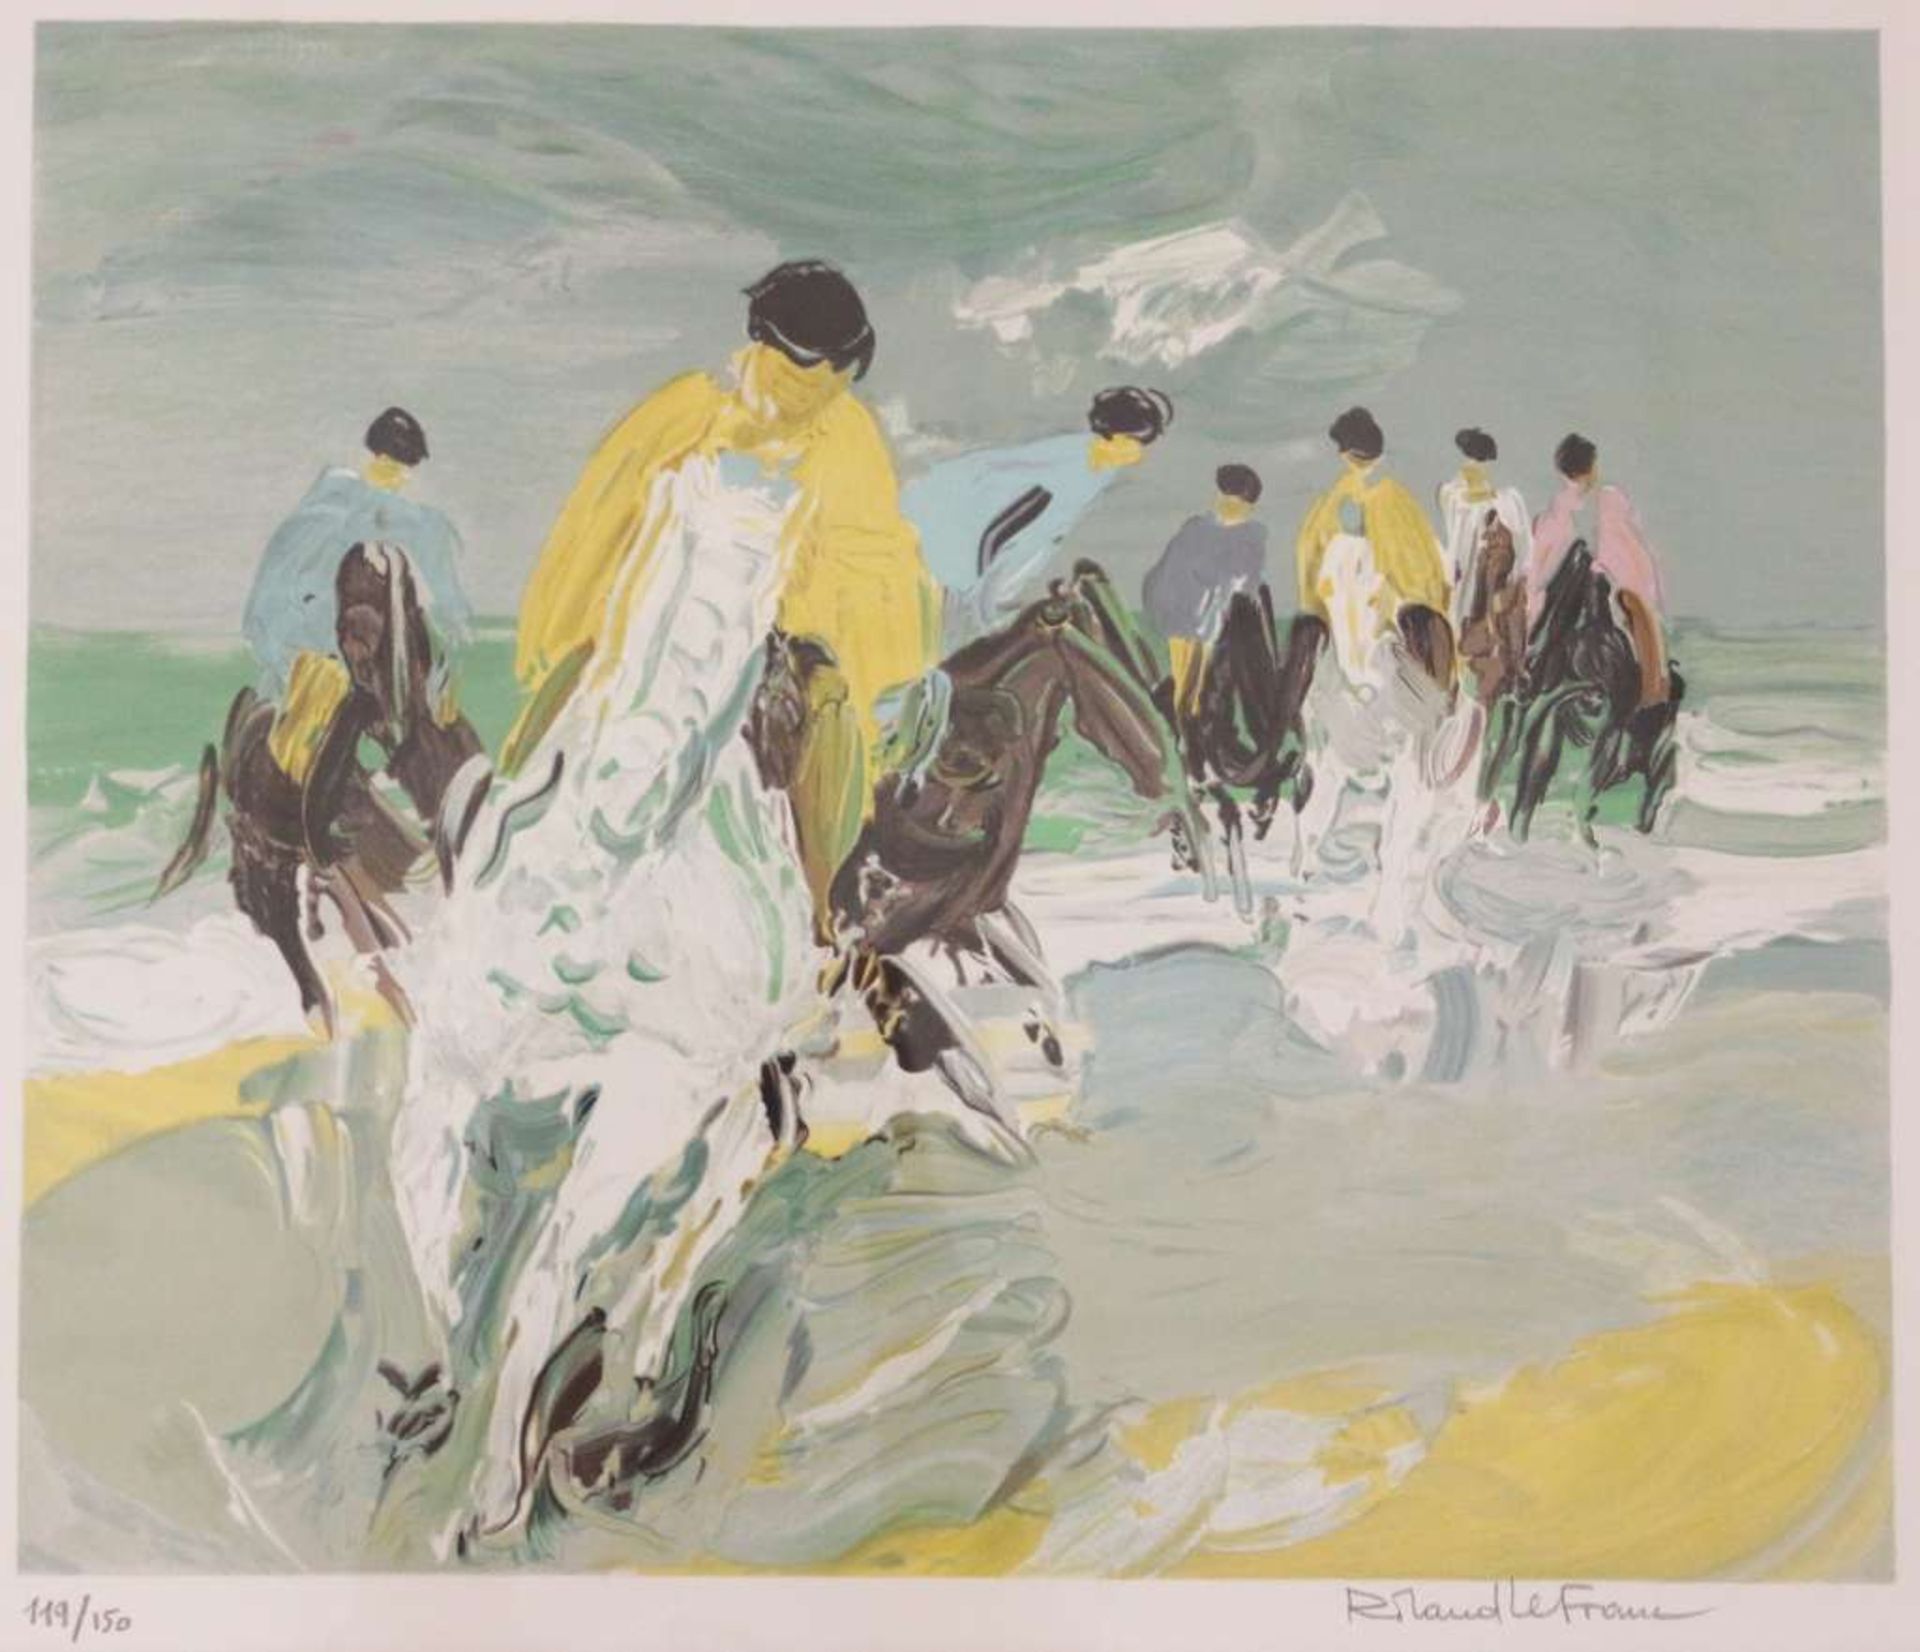 Roland LEFRANC (1931-2000), Farblitographie, Cavaliers sur la plage, u.re. sign., Expl. 119/150,